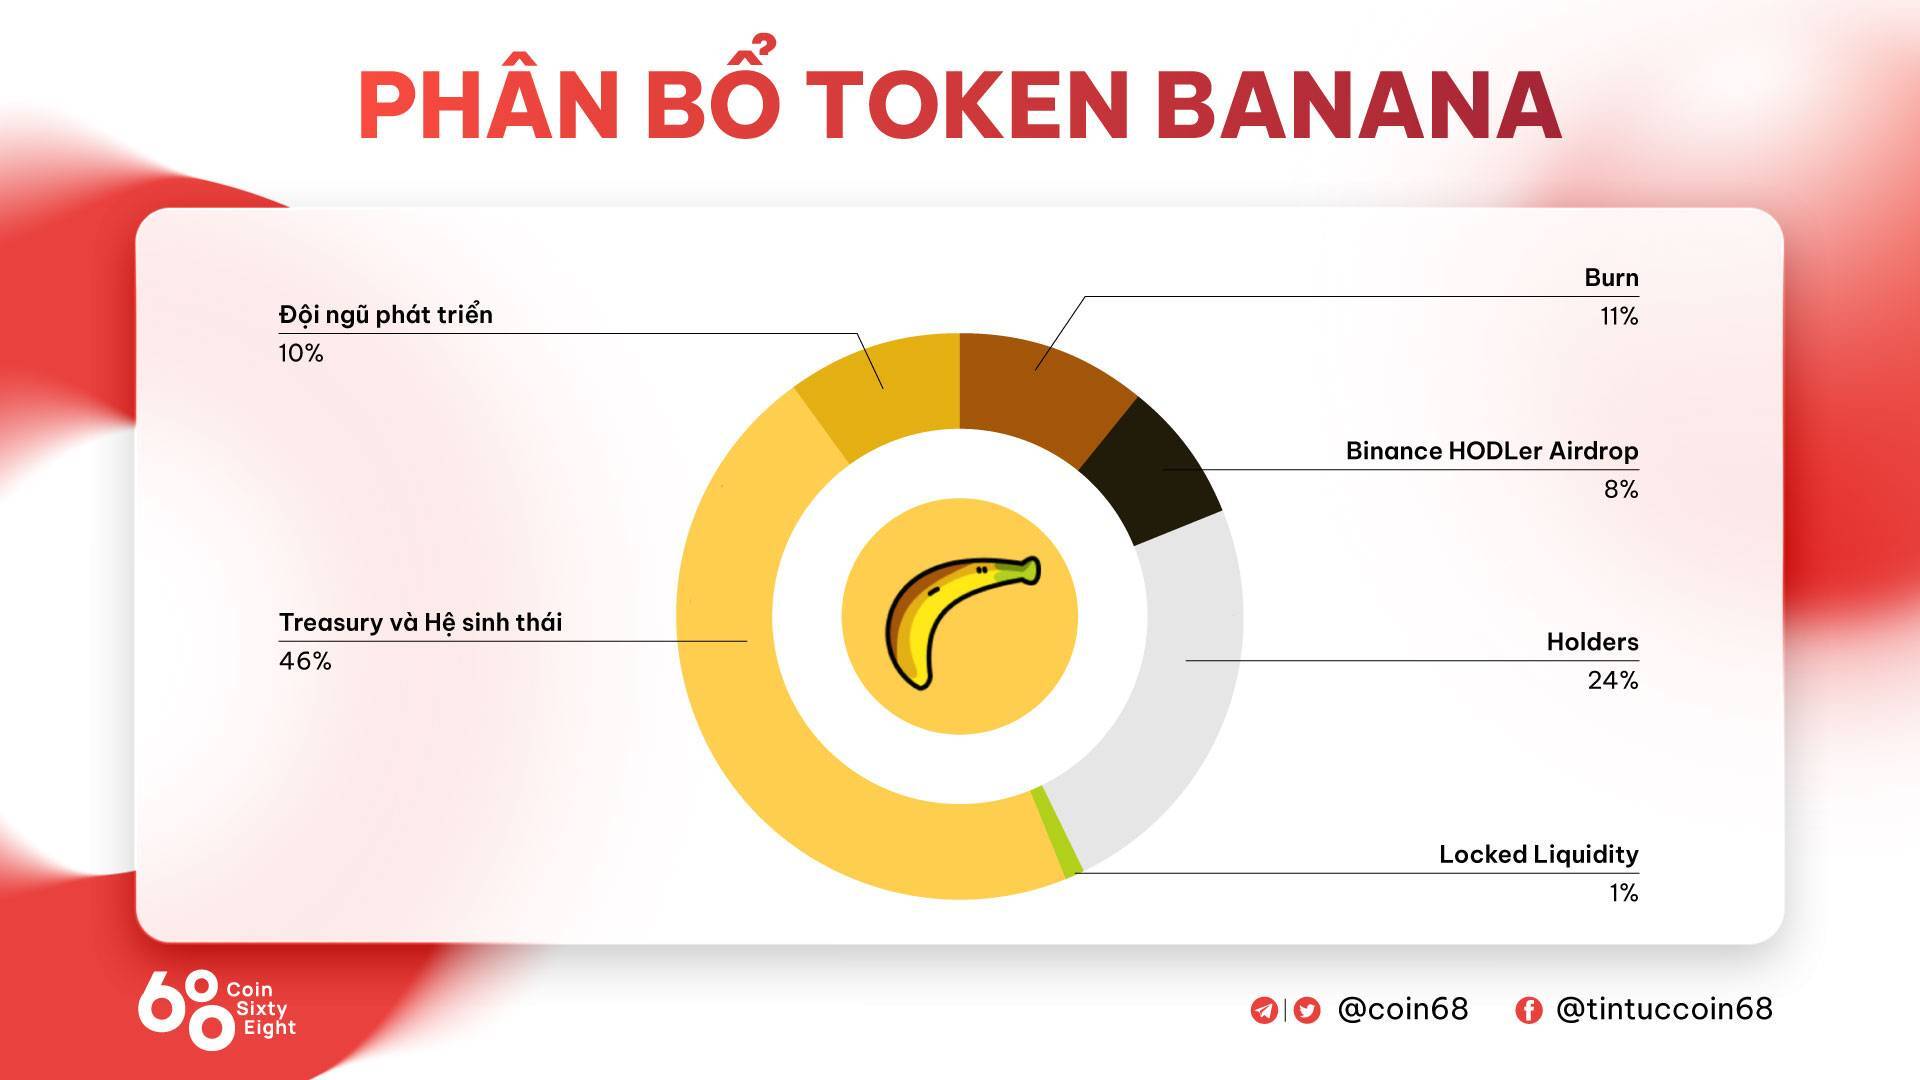 Banana Gun banana Là Gì Tìm Hiểu Về Dự Án Đầu Tiên Của Chương Trình Binance Hodler Airdrops